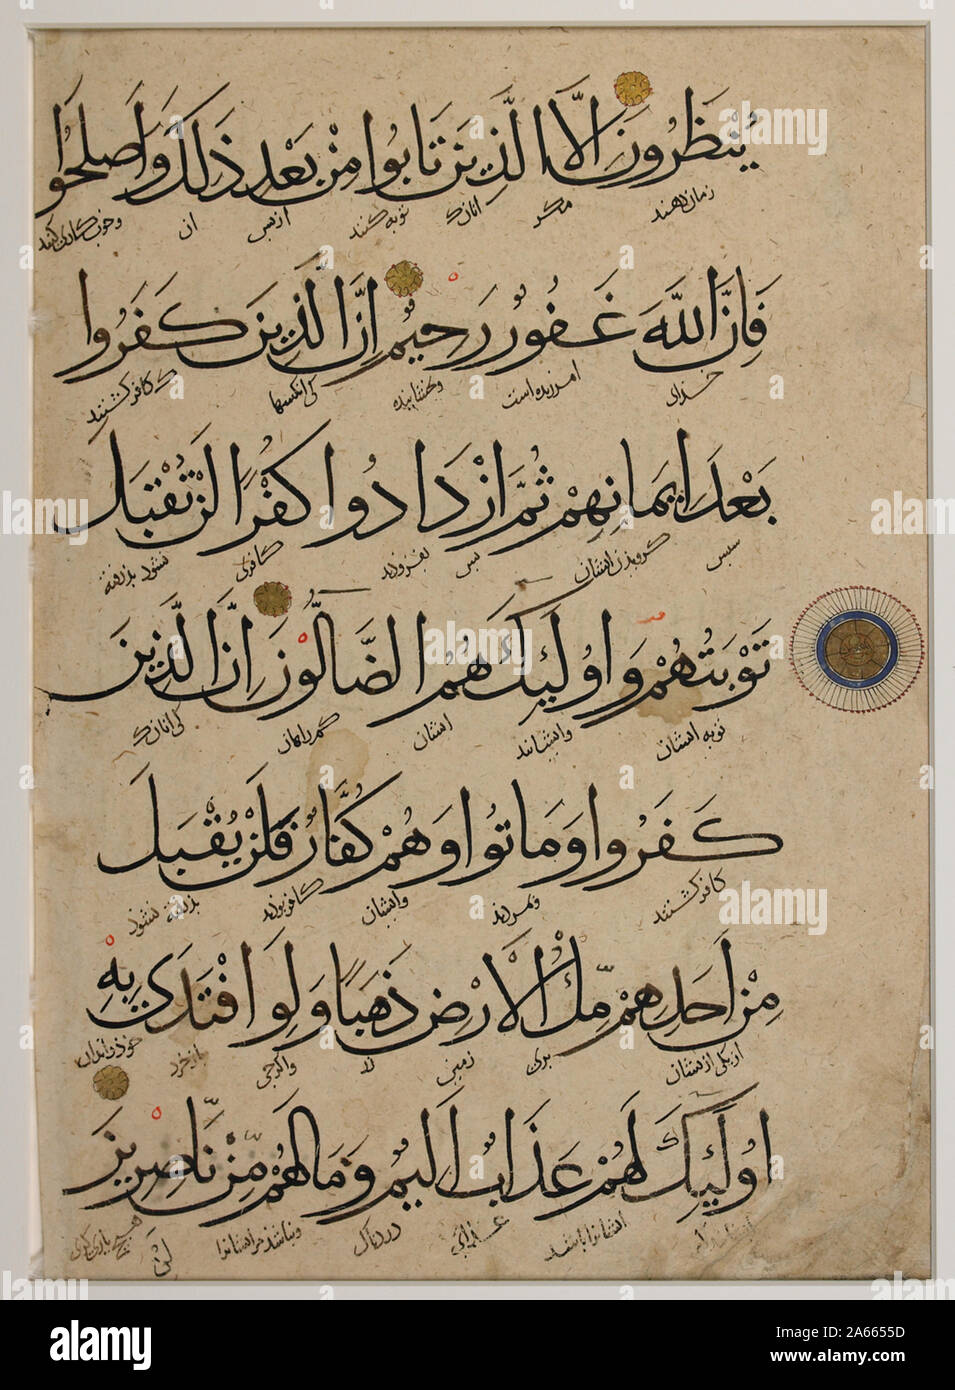 Ce fragment du Coran les versets 85-88 comprend de la troisième sourate (chapitre) du Coran, Al 'Imran (La famille de 'Imran). Les versets continuer sur le verso du fragment. Dans cette sourate, tous les gens sont invités à accepter l'Islam, alors que les musulmans sont encouragés à chercher l'amitié et de la sécurité au sein de leurs communautés. Entre chaque ligne horizontale du texte arabe diagonale sont mot à mot des traductions en persan. Contrairement à dans le Qur'ans interlinéaire qui incluent une traduction persane à l'encre rouge, ce fragment ne fait aucune distinction entre les couleurs d'origine arabe et son rendu des Persans. La fragmen Banque D'Images